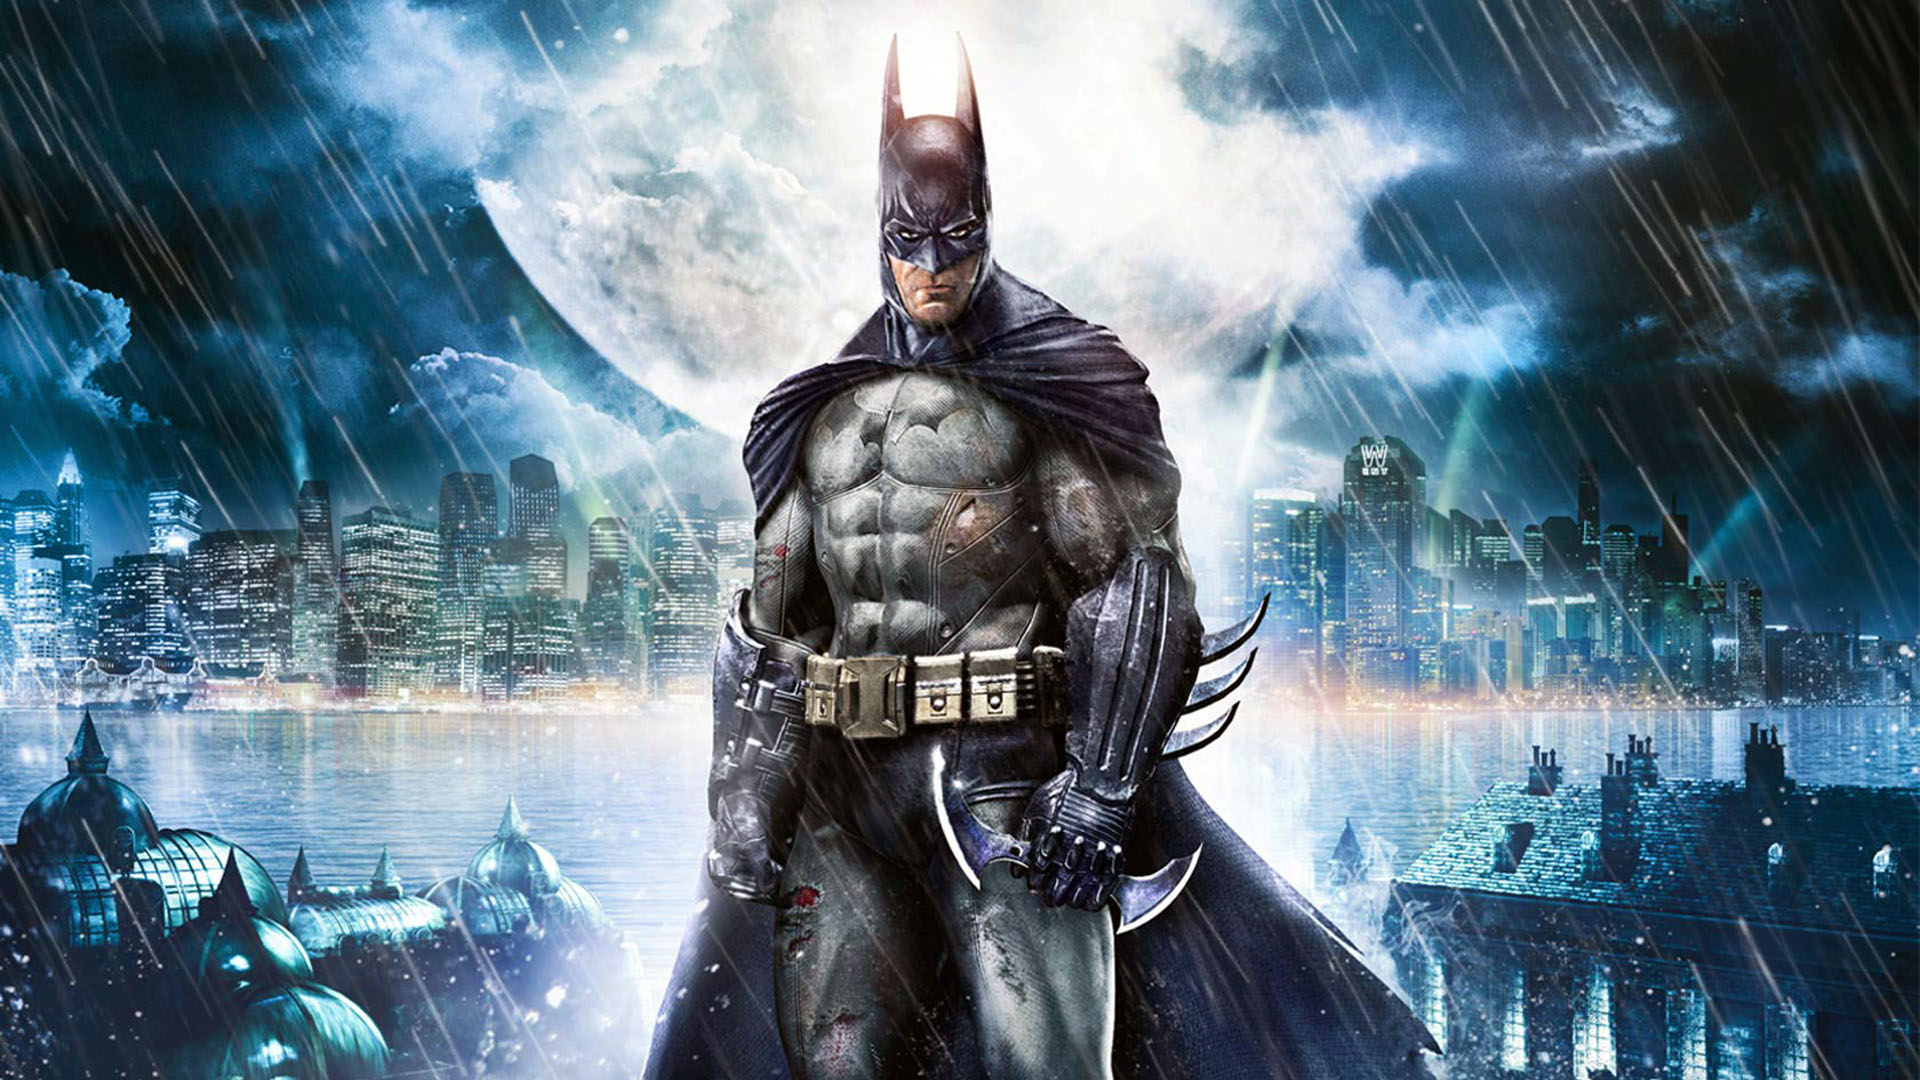 Скачать обои Бэтмен: Лечебница Аркхема на телефон бесплатно